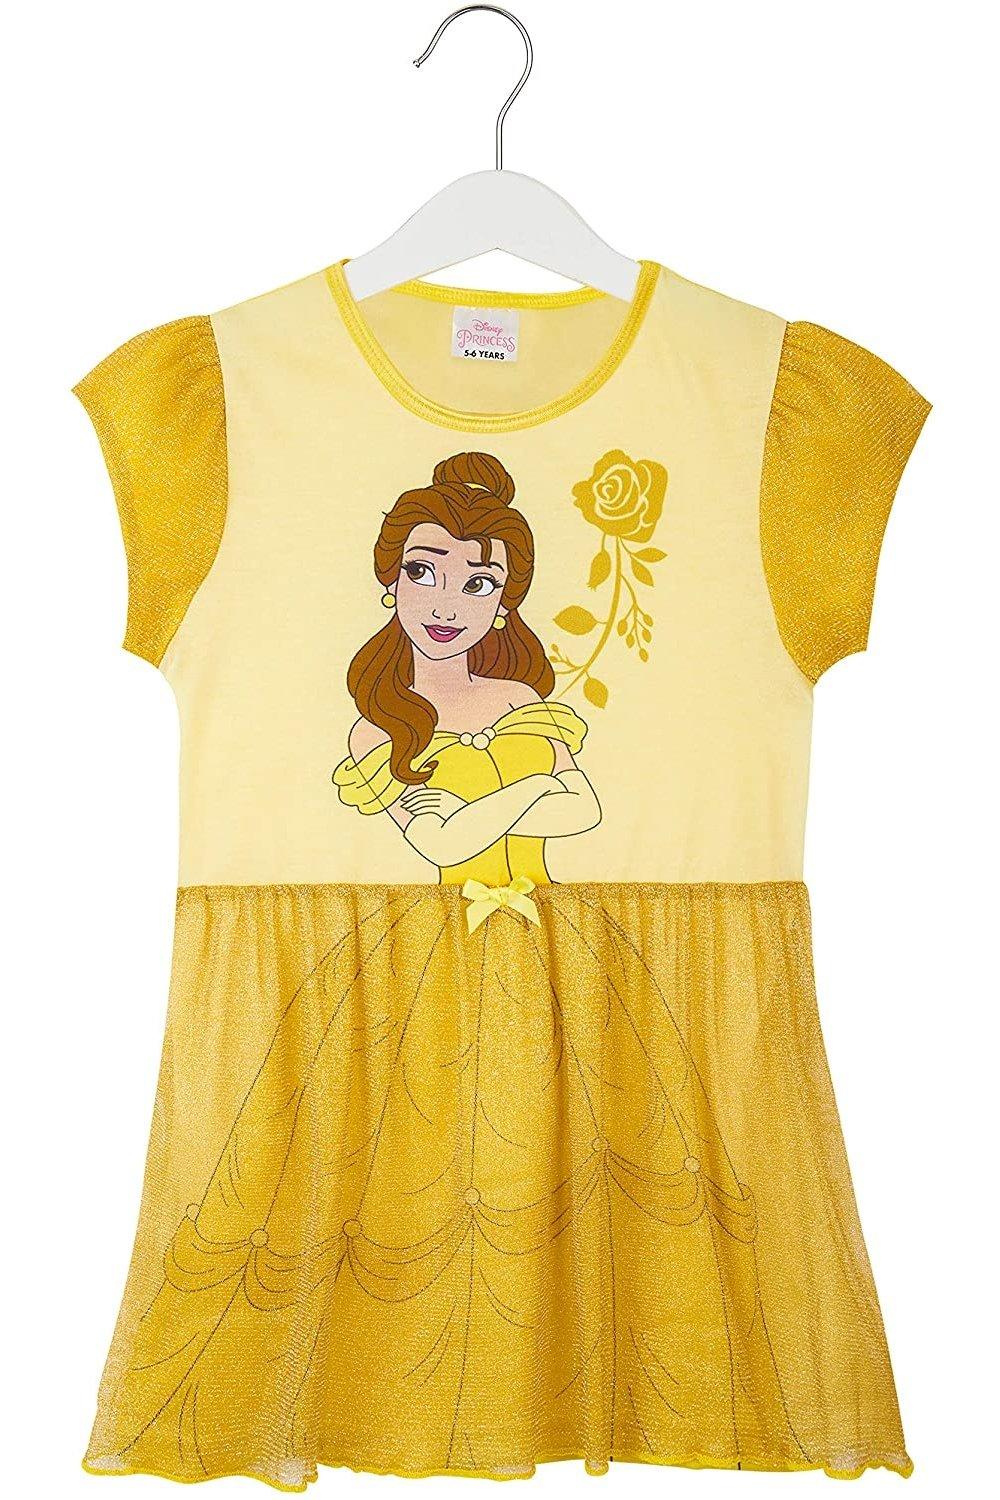 Ночное платье с коротким рукавом Disney, желтый disney princess кукла принцесса дисней белль мини e6512 e6373